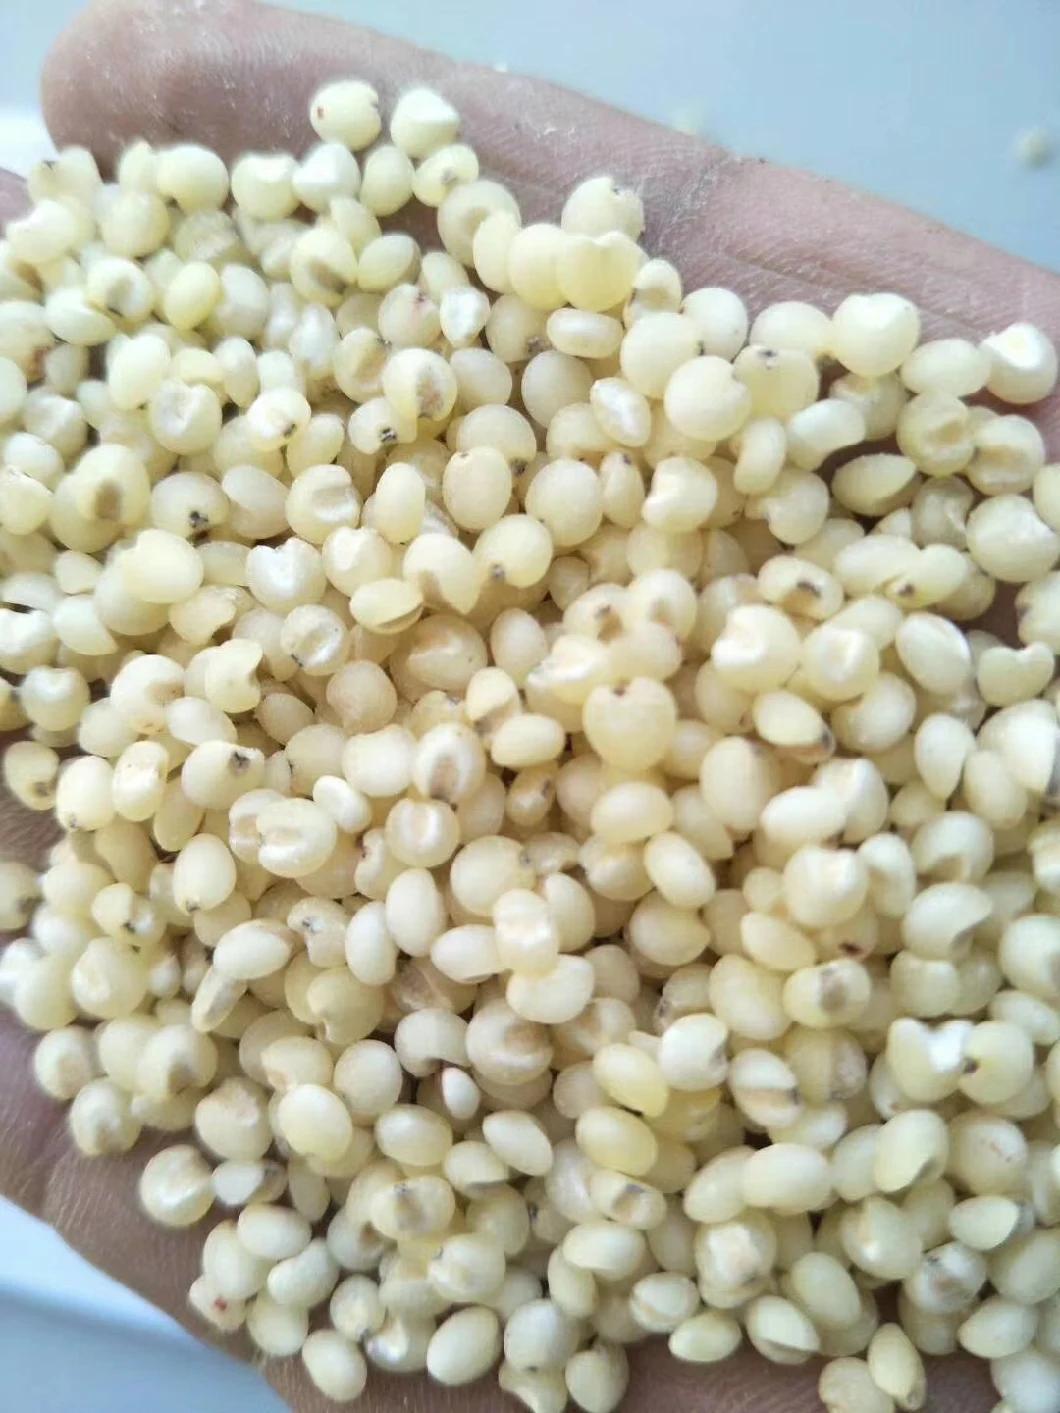 Clj Brand Quinoa Processing Professional Auto Rice Mill Machine in Egypt